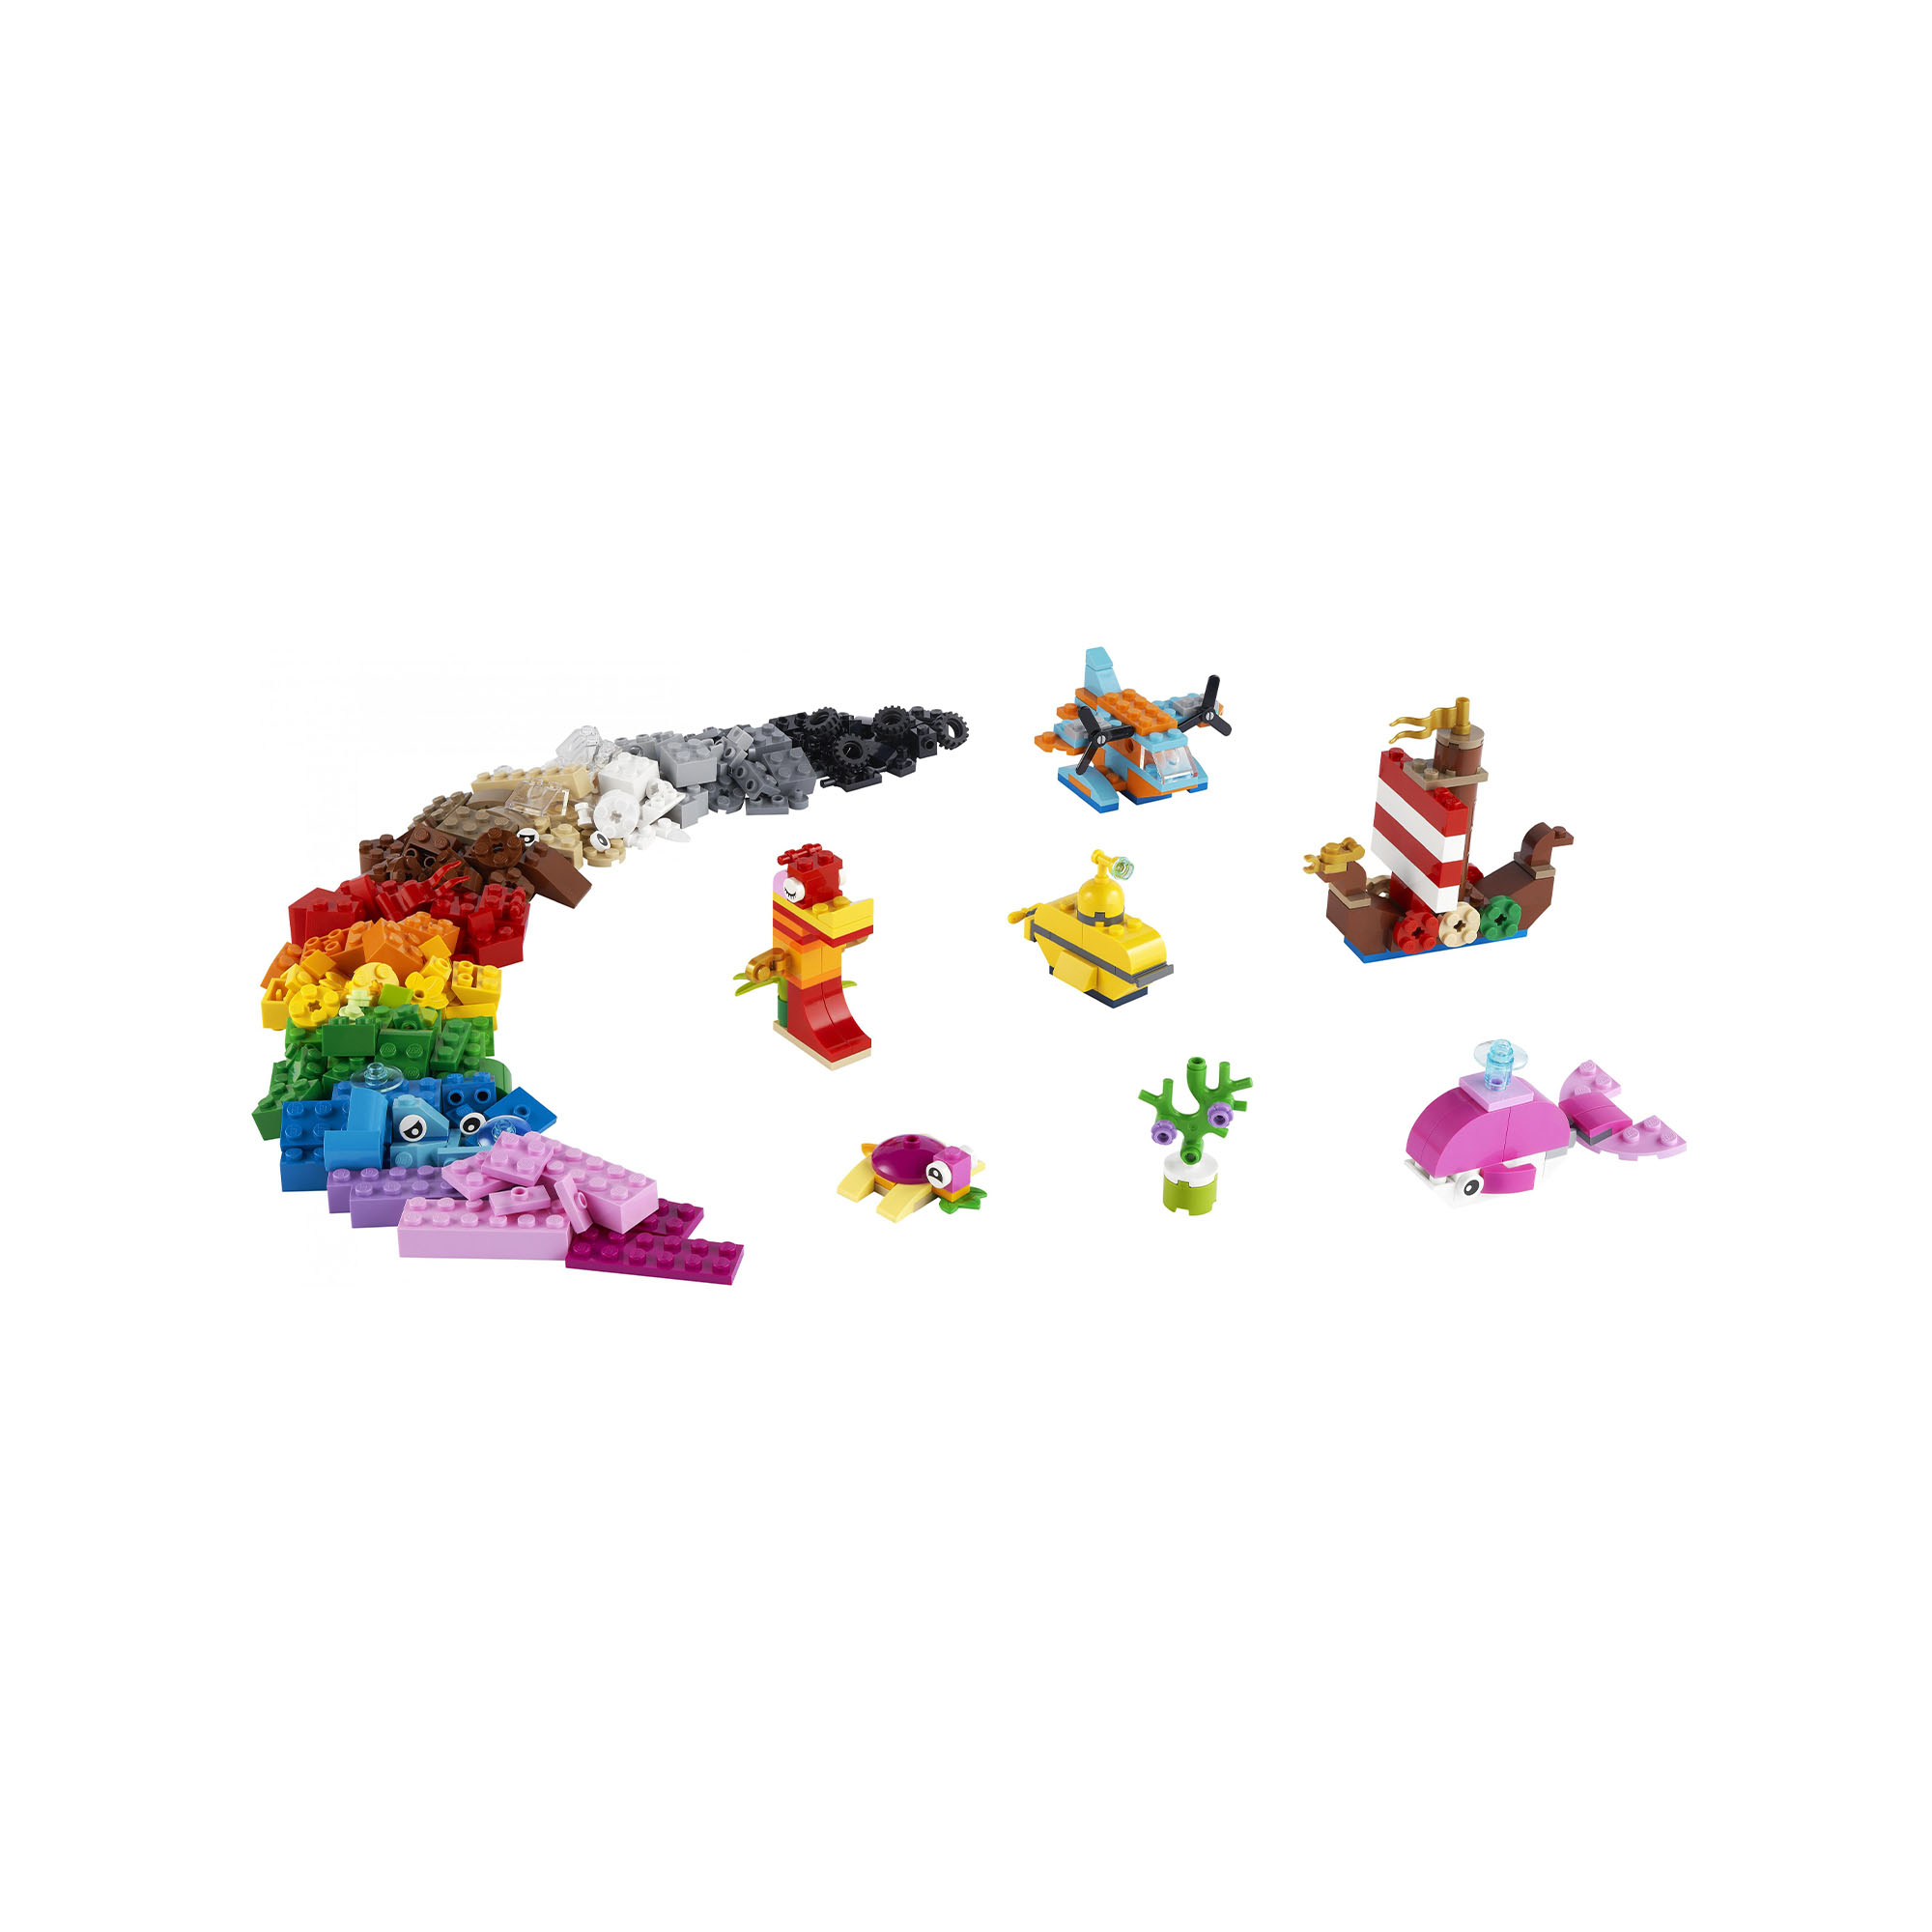 LEGO Classic Divertimento Creativo sull'Oceano, Giocattoli Creativi per Bambini 11018, , large